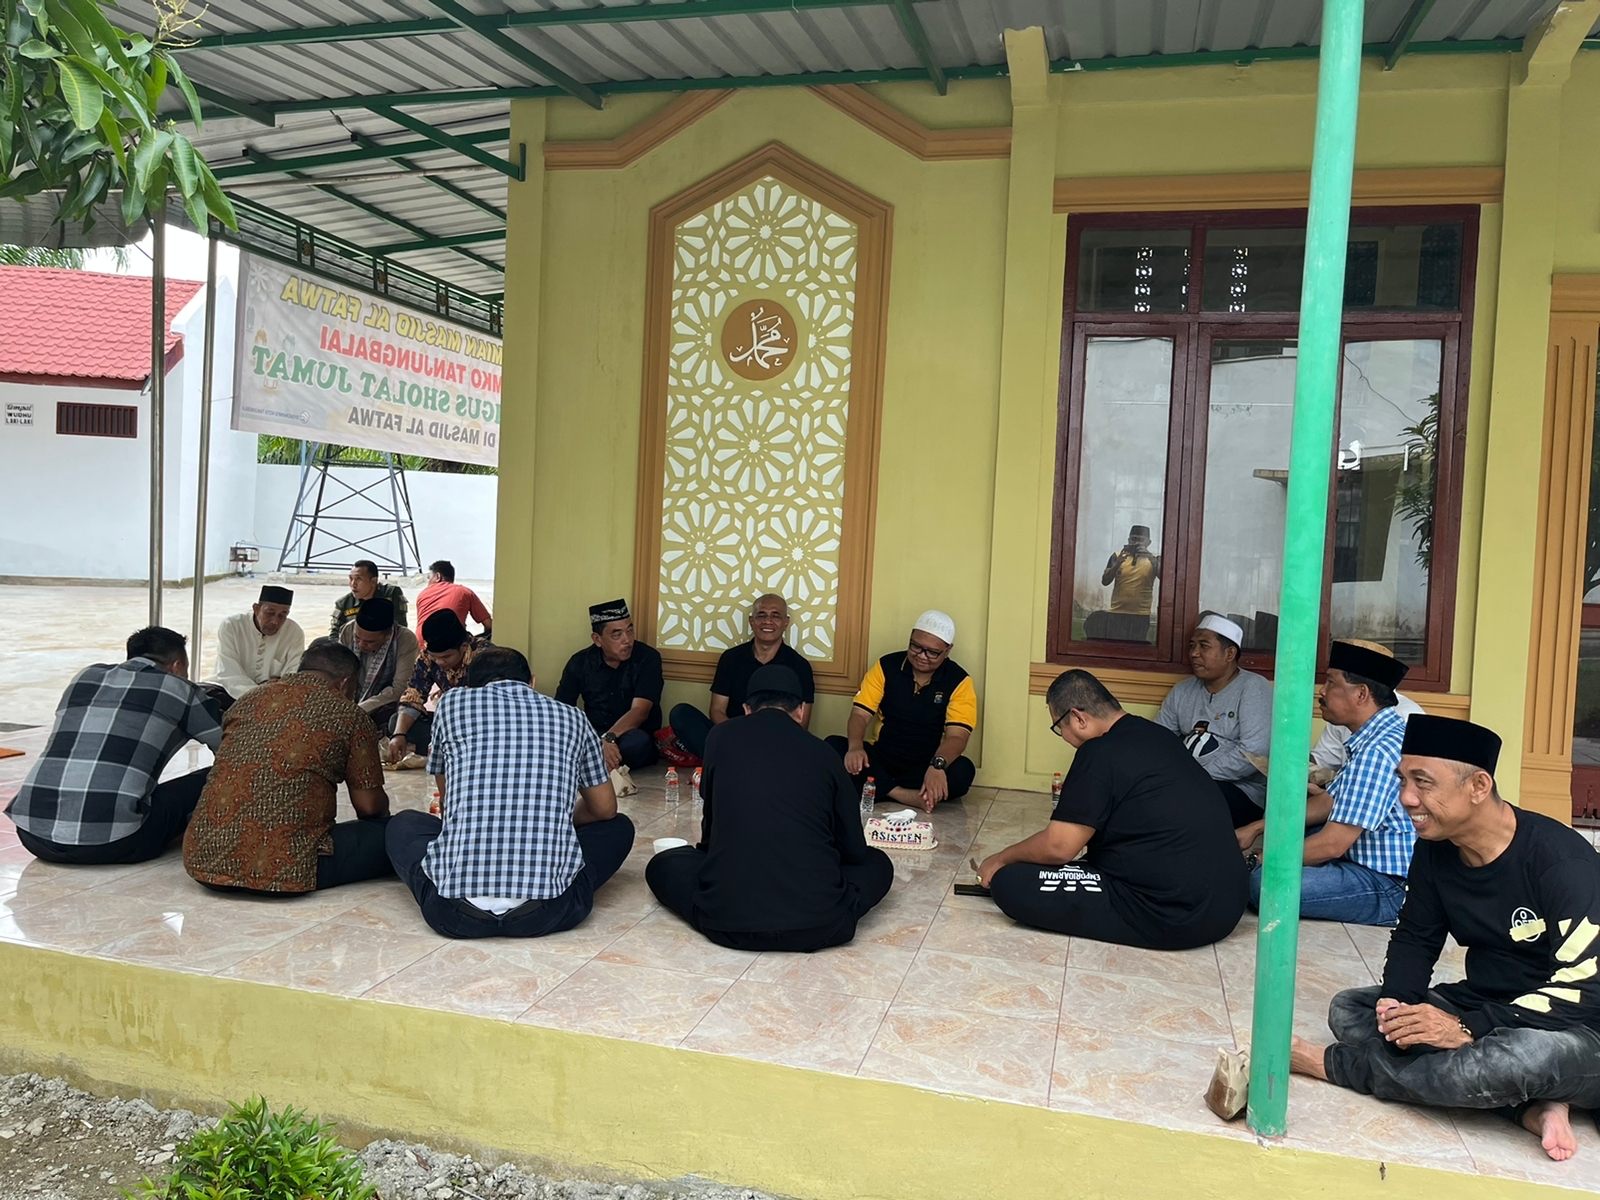 Jumat Curhat, Kapolres Tanjungbalai Terima Saran dan Aduan dari Masyarakat